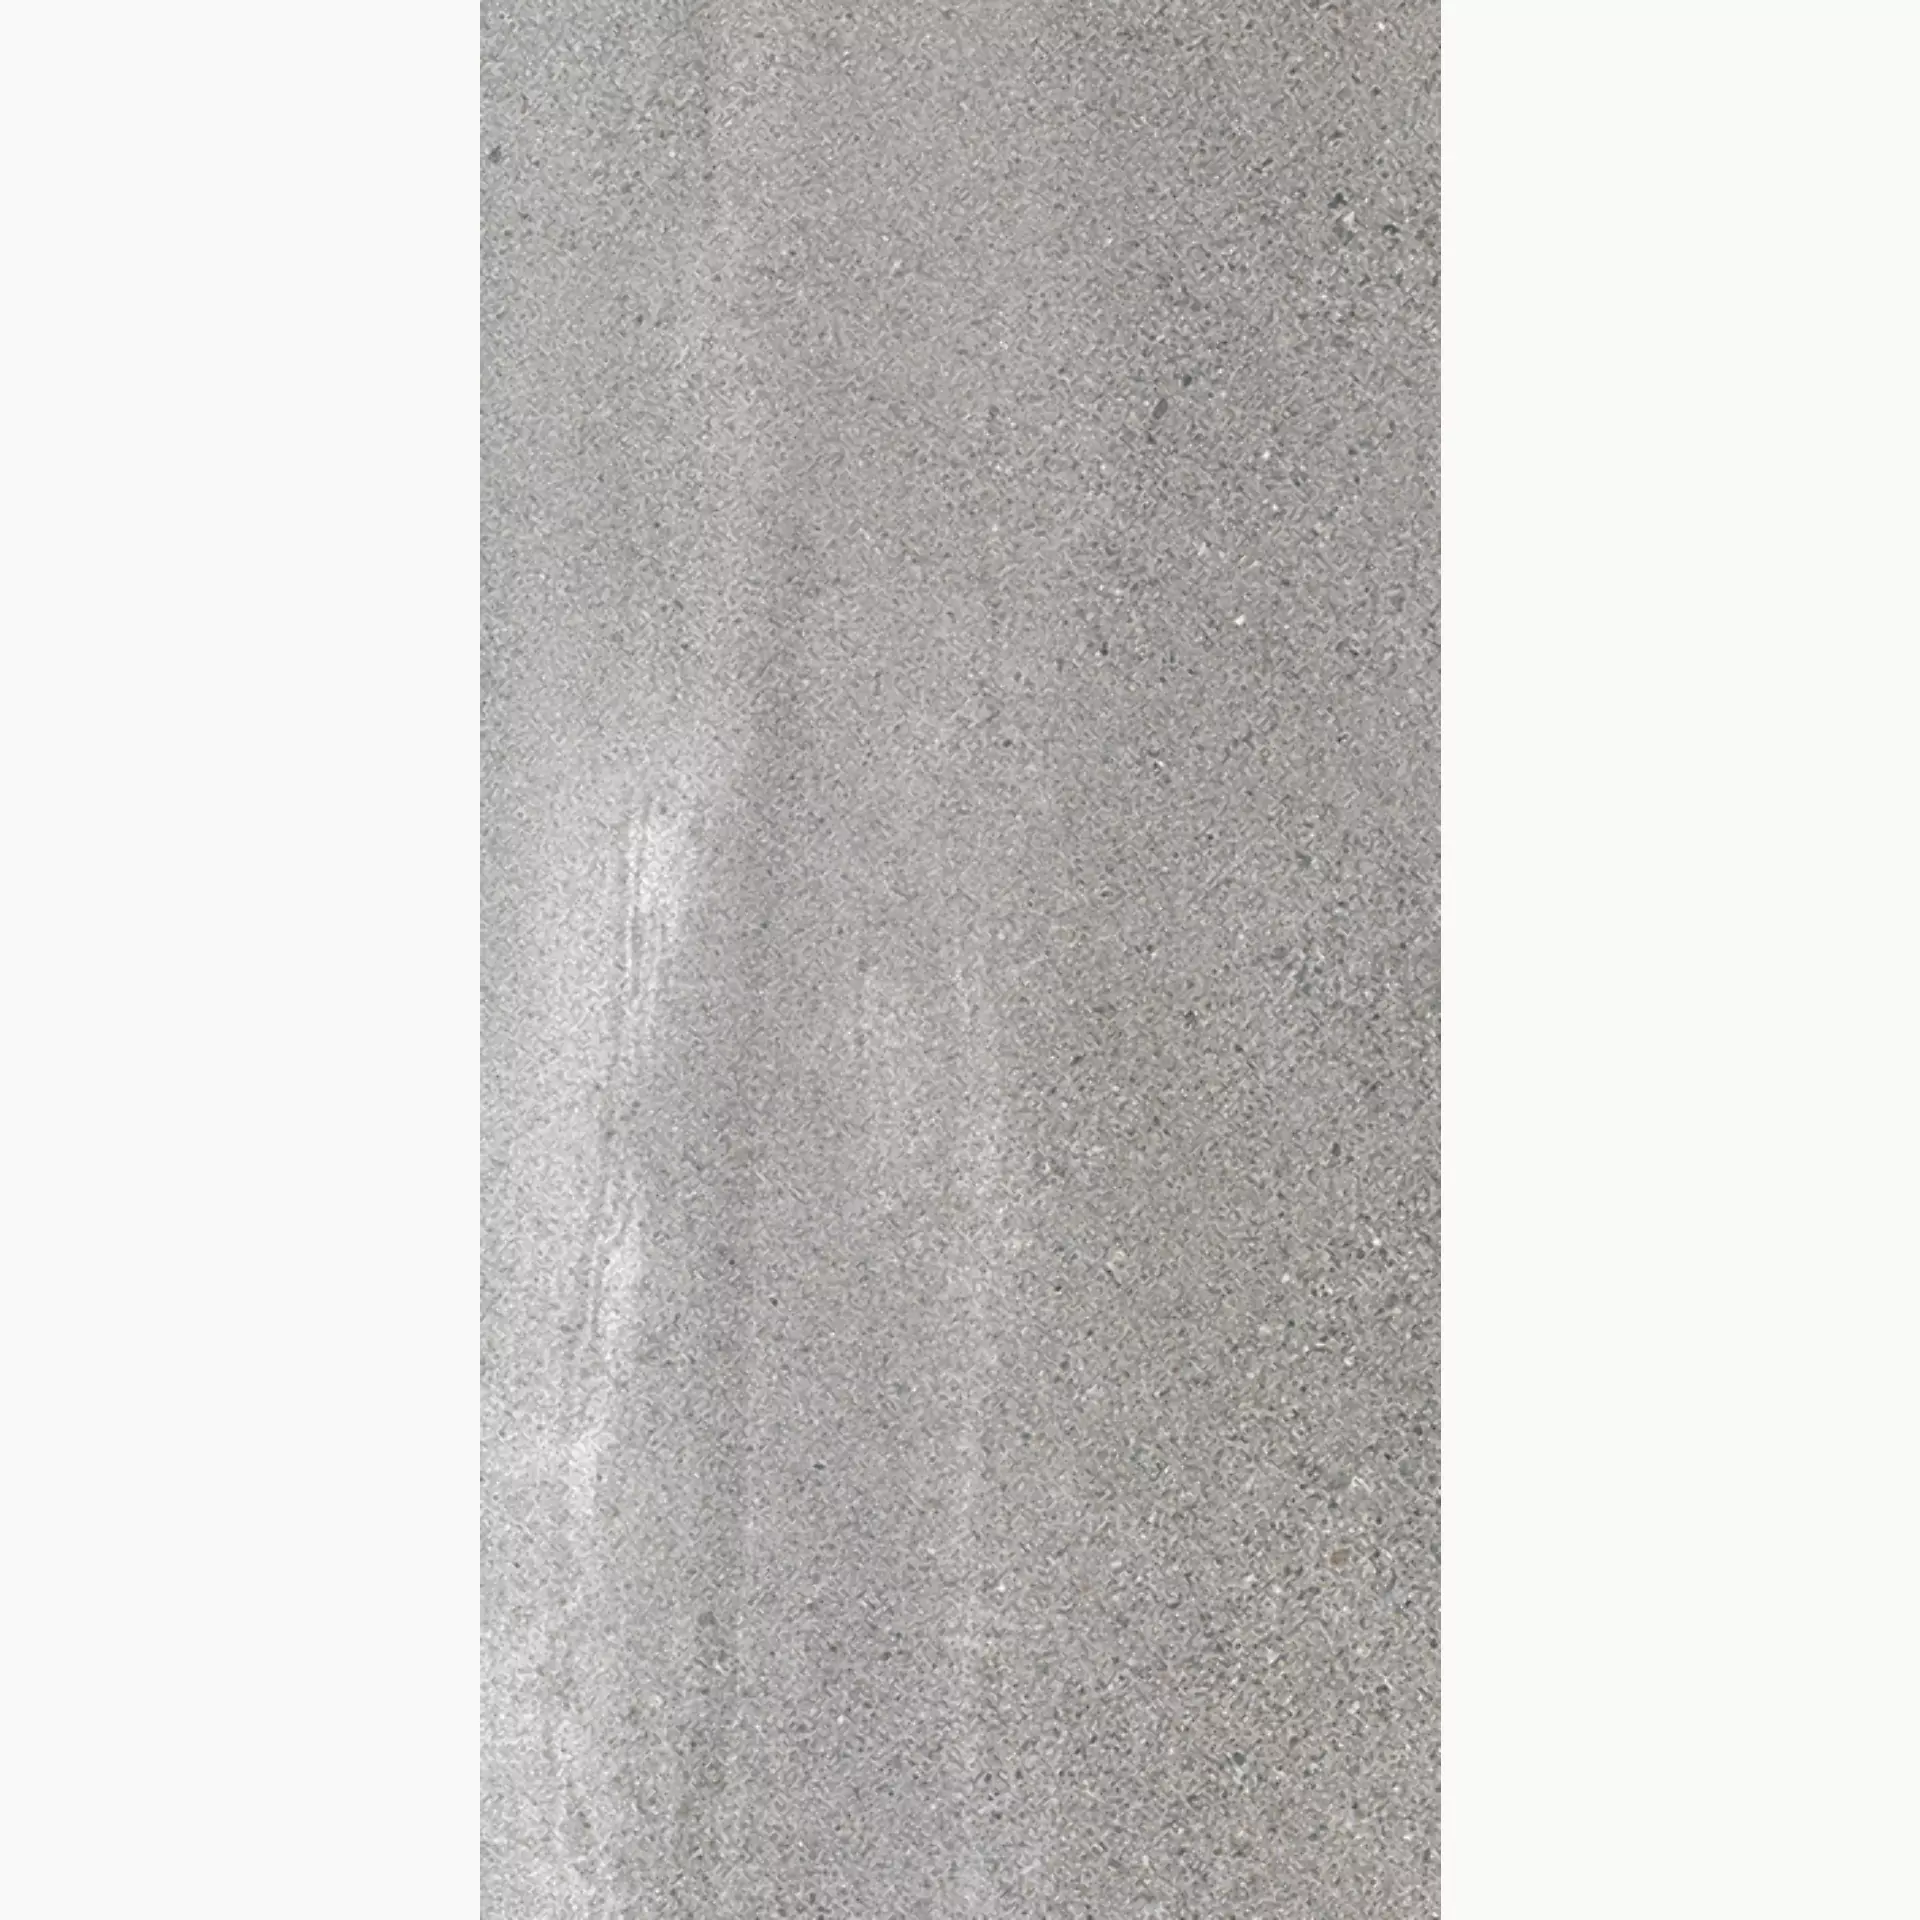 Wandfliese,Bodenfliese Villeroy & Boch Natural Blend Stone Grey Matt Stone Grey 2394-LY60 matt 30x60cm rektifiziert 9mm